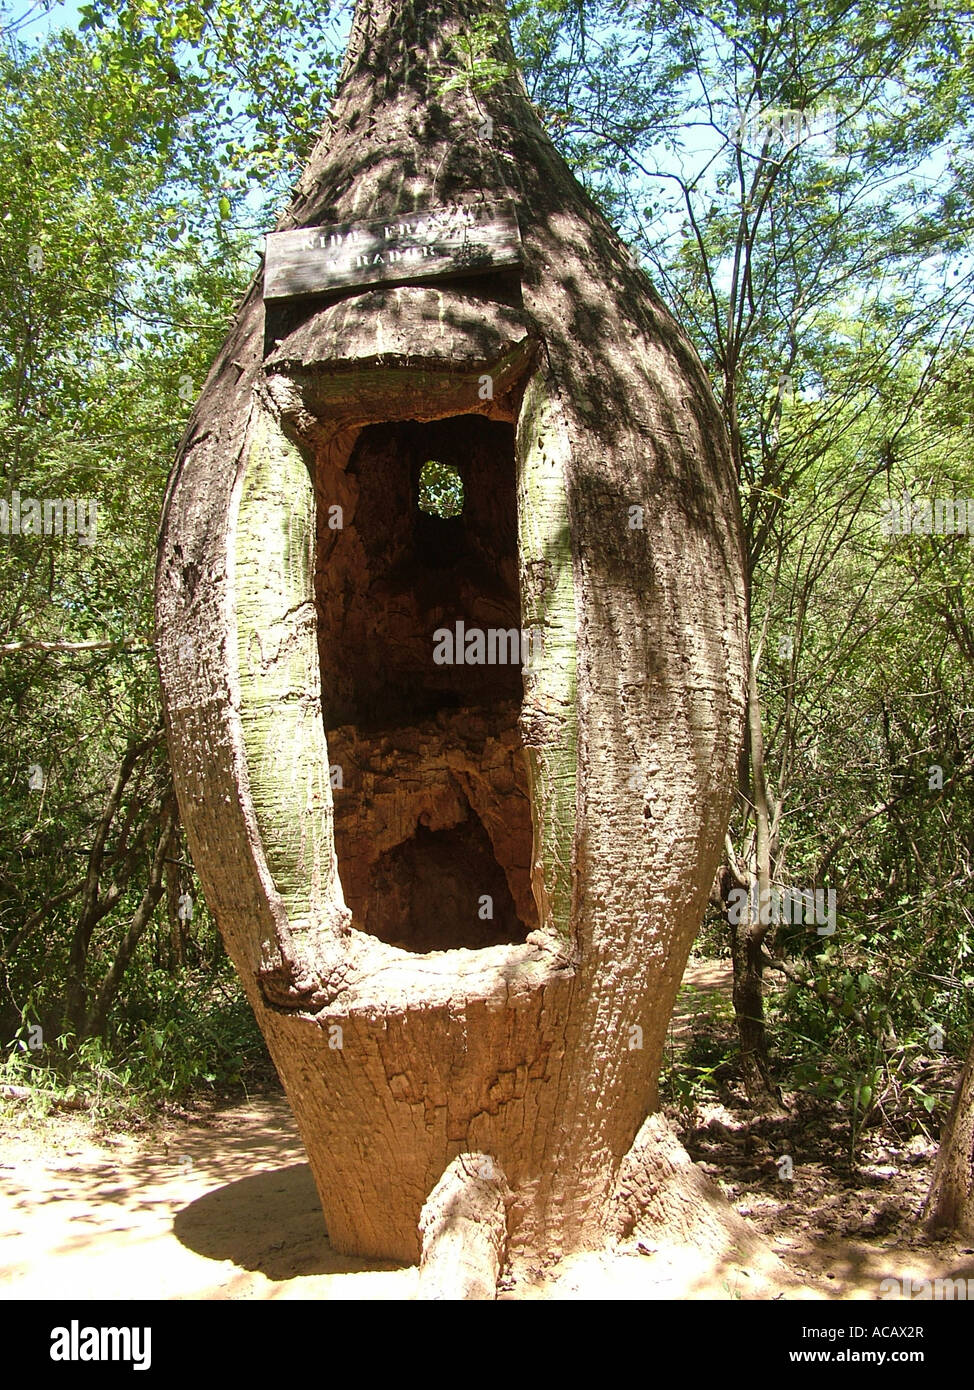 Antiguo pedestal de disparo de la guerra del Chaco en un árbol botella, Fortín Boquerón, Gran Chaco, Paraguay Foto de stock